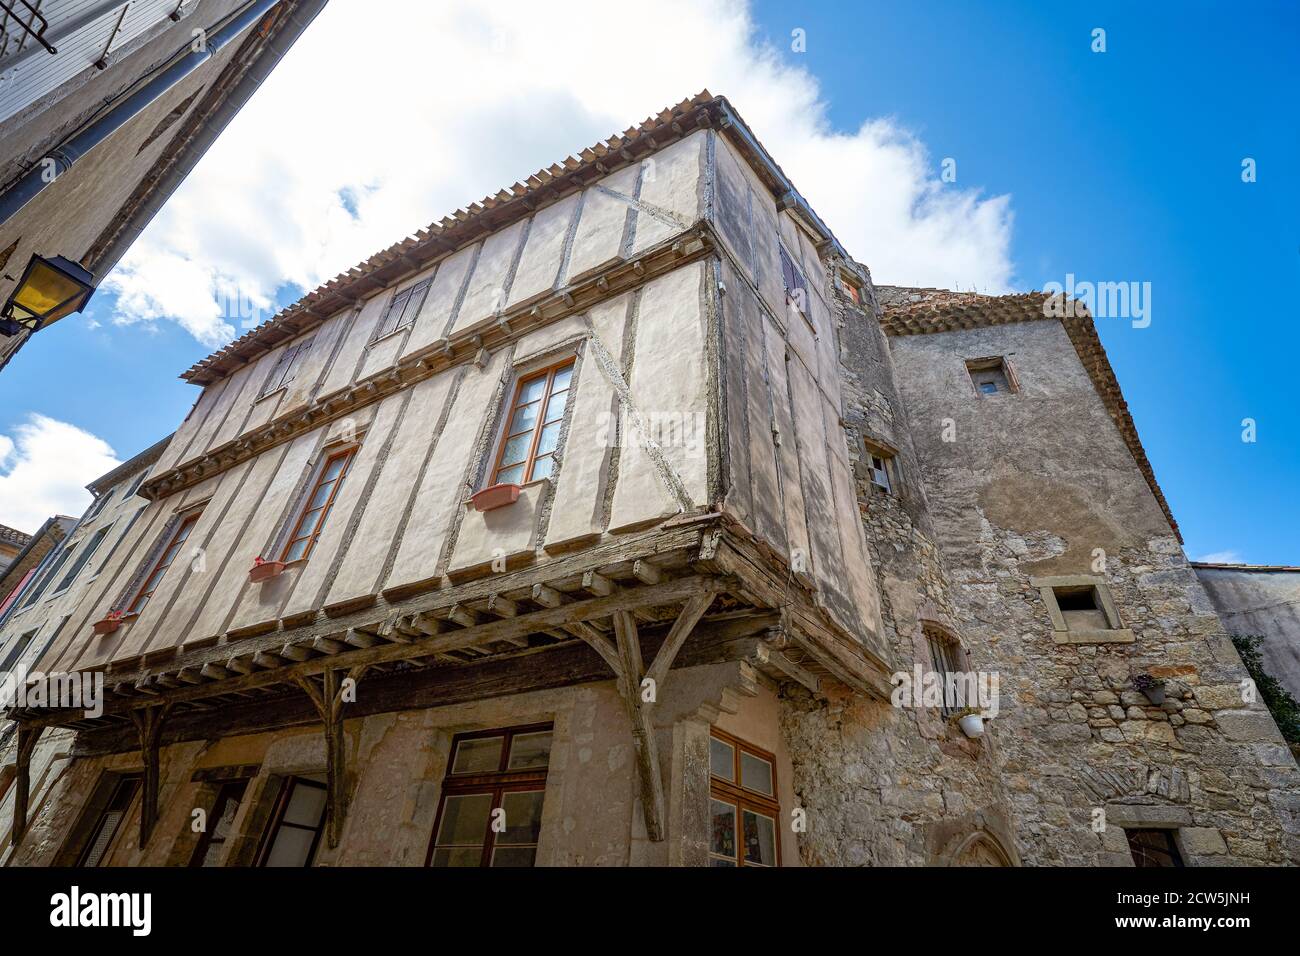 Maison médiévale, Lagrasse, Sud de la France Banque D'Images